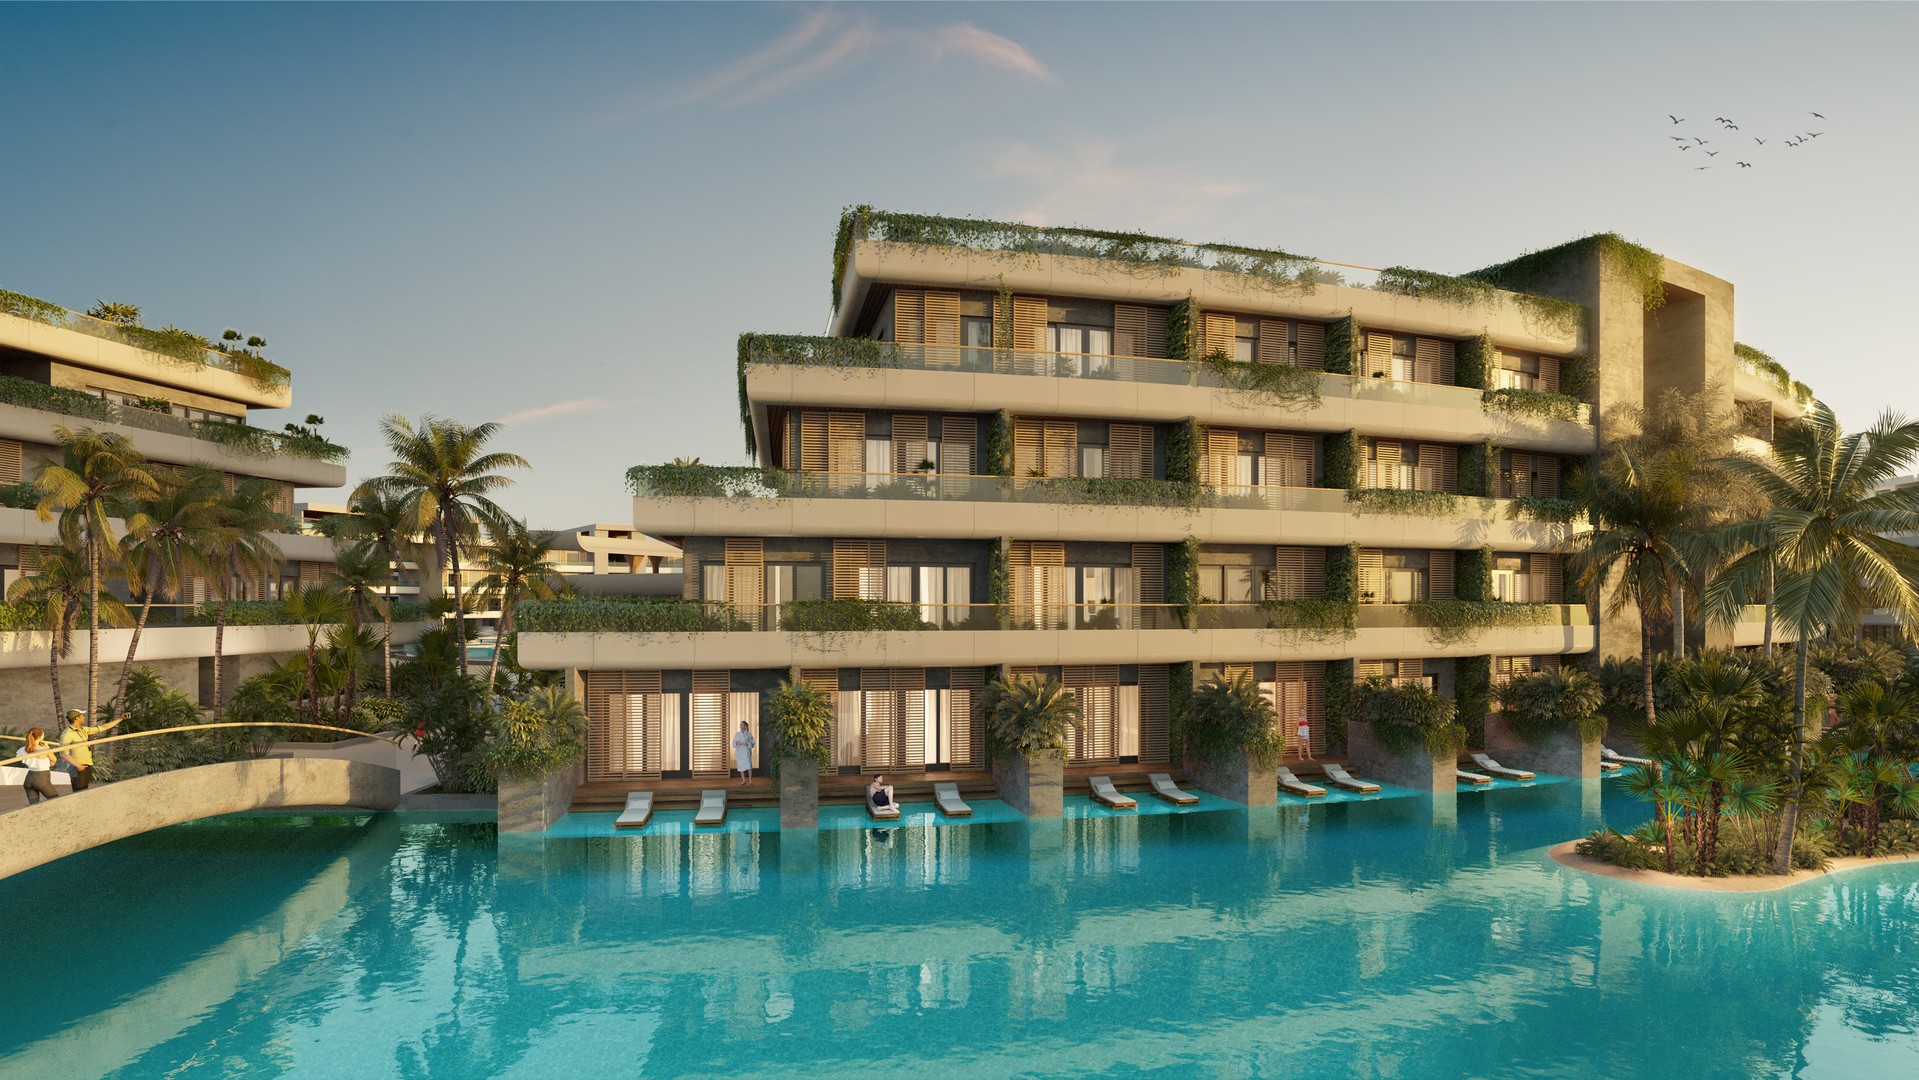 apartamentos - Apartamentos de lujo de venta en Punta Cana, a 3 minutos de la playa. 1,2,3 hab. 2